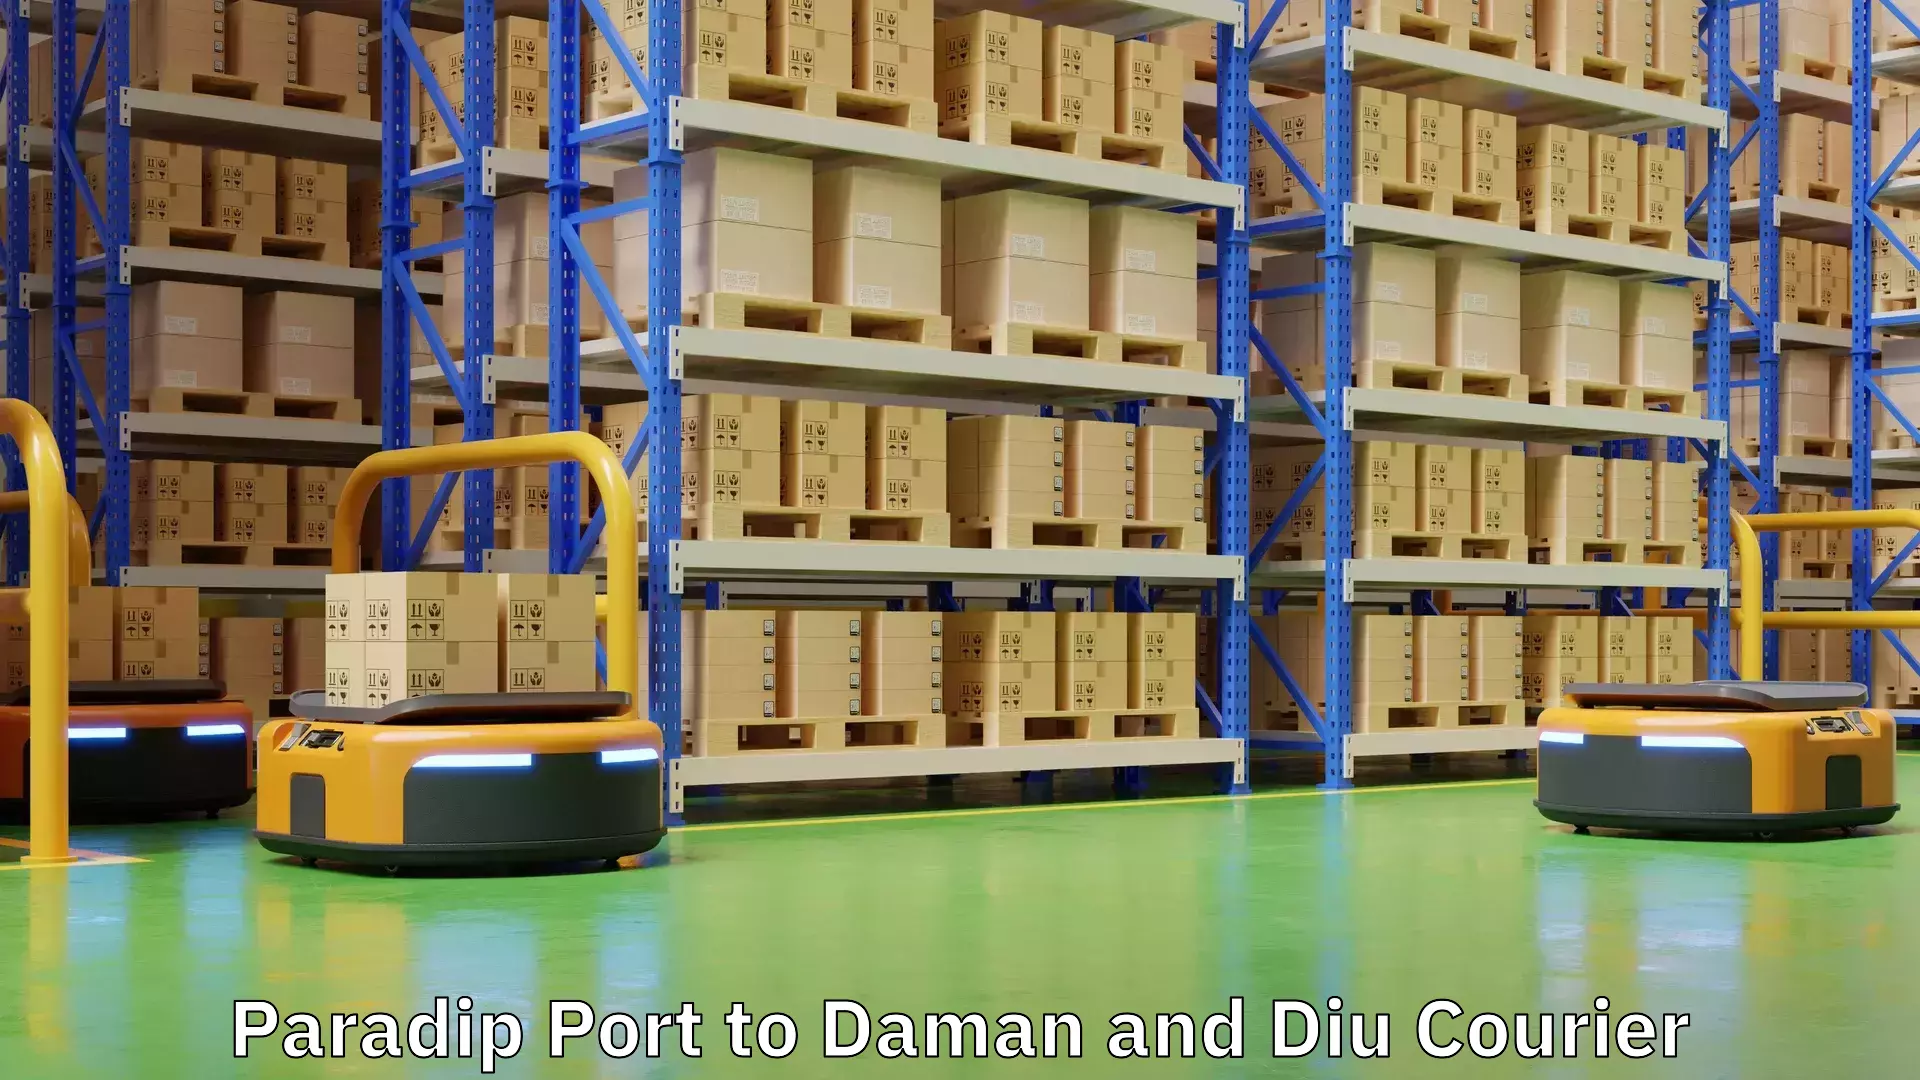 Urban courier service Paradip Port to Daman and Diu